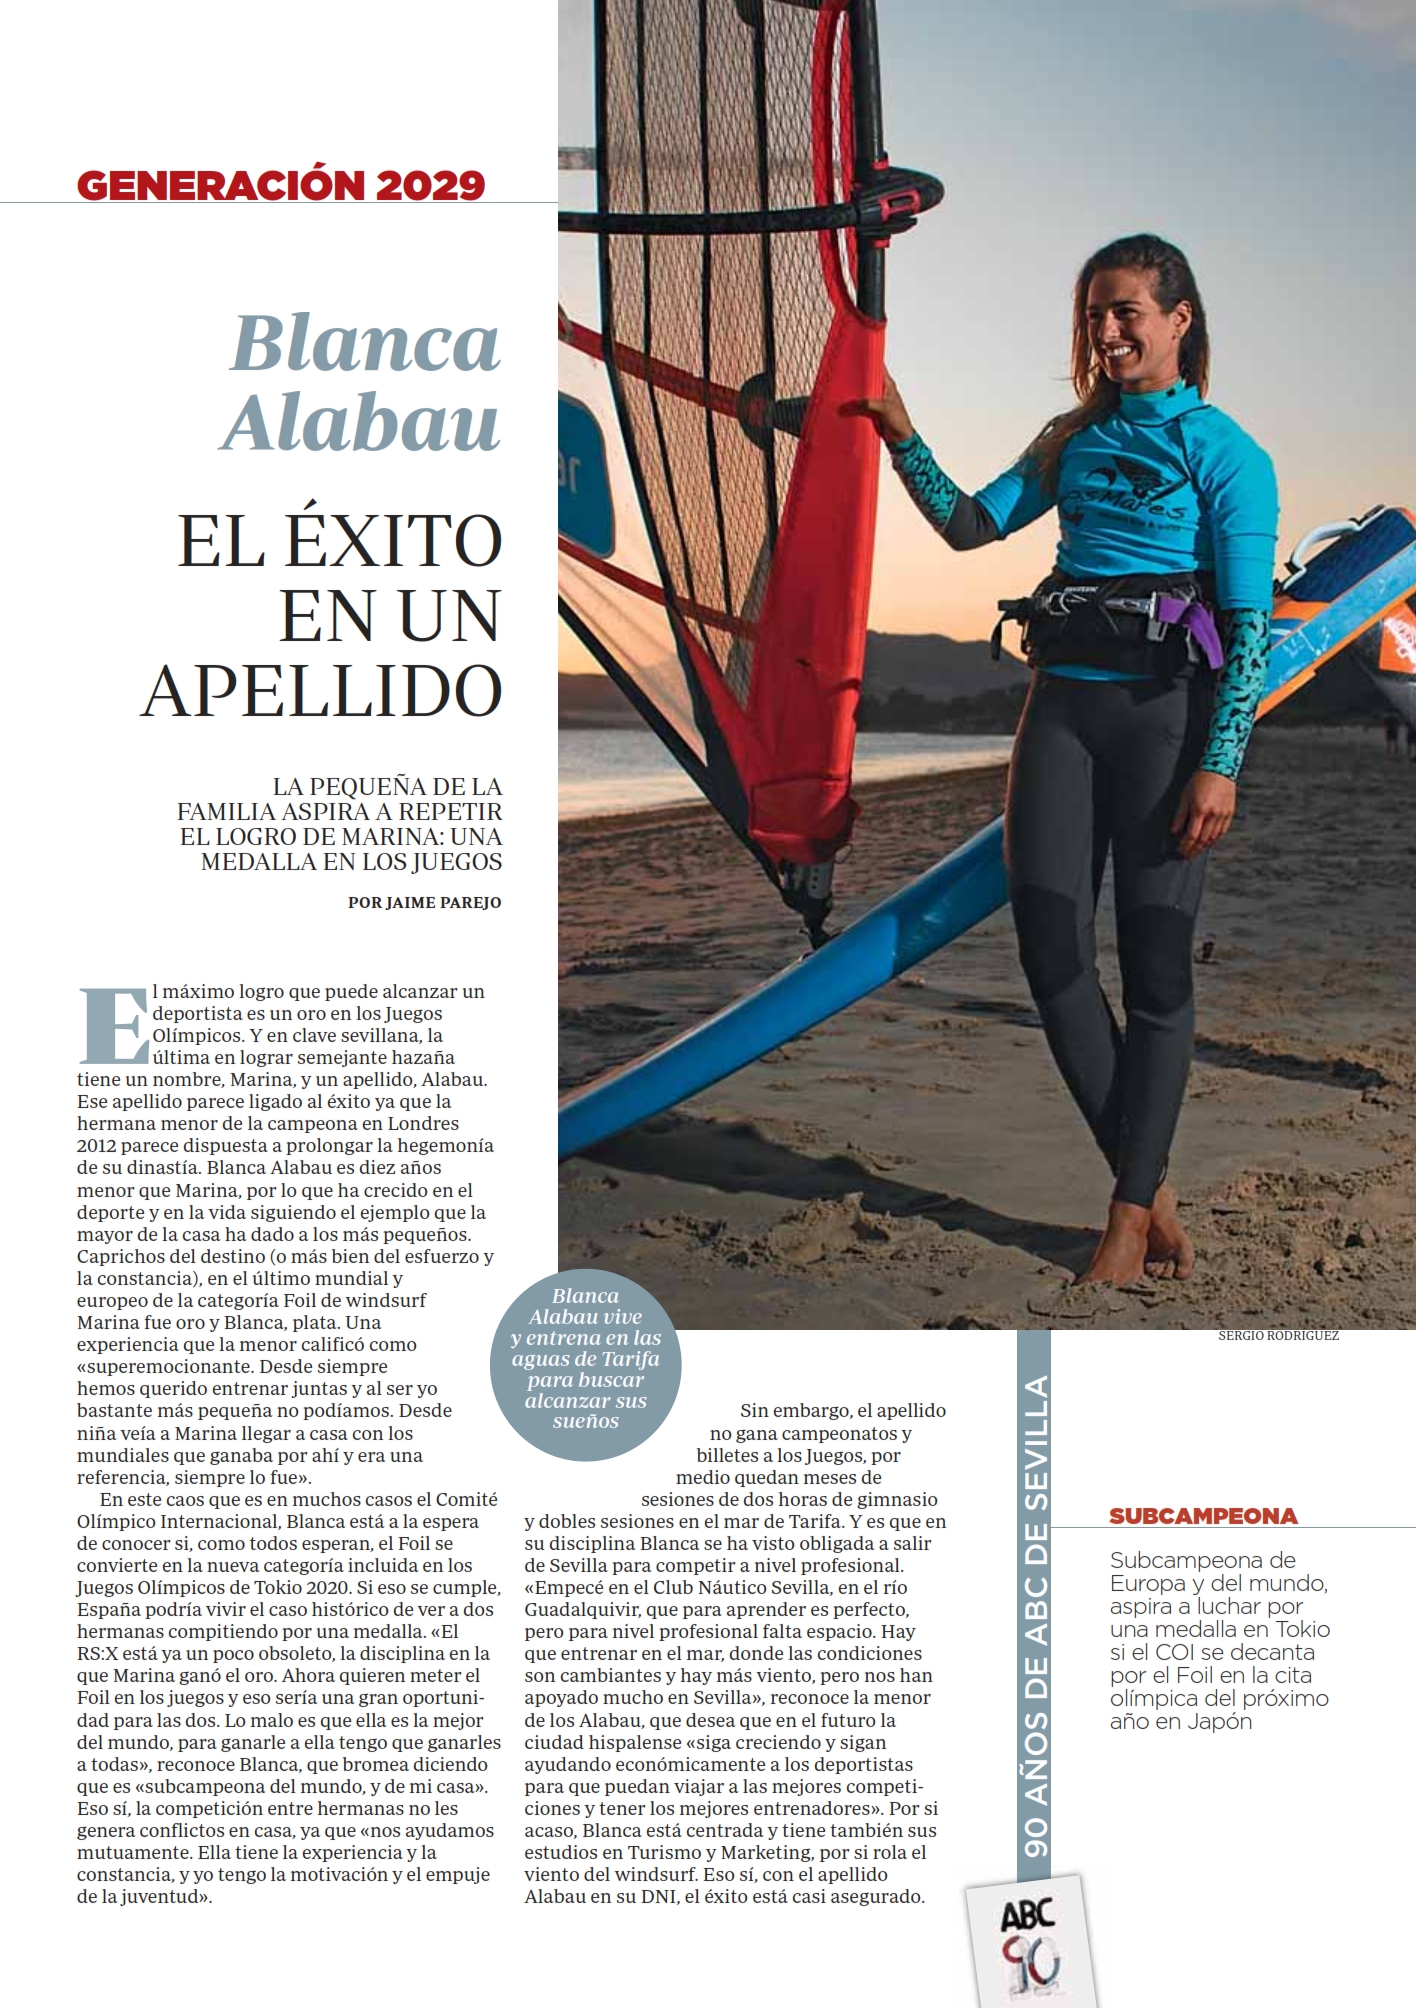 ABC Blanca Alabau 2019-10-31.jpg